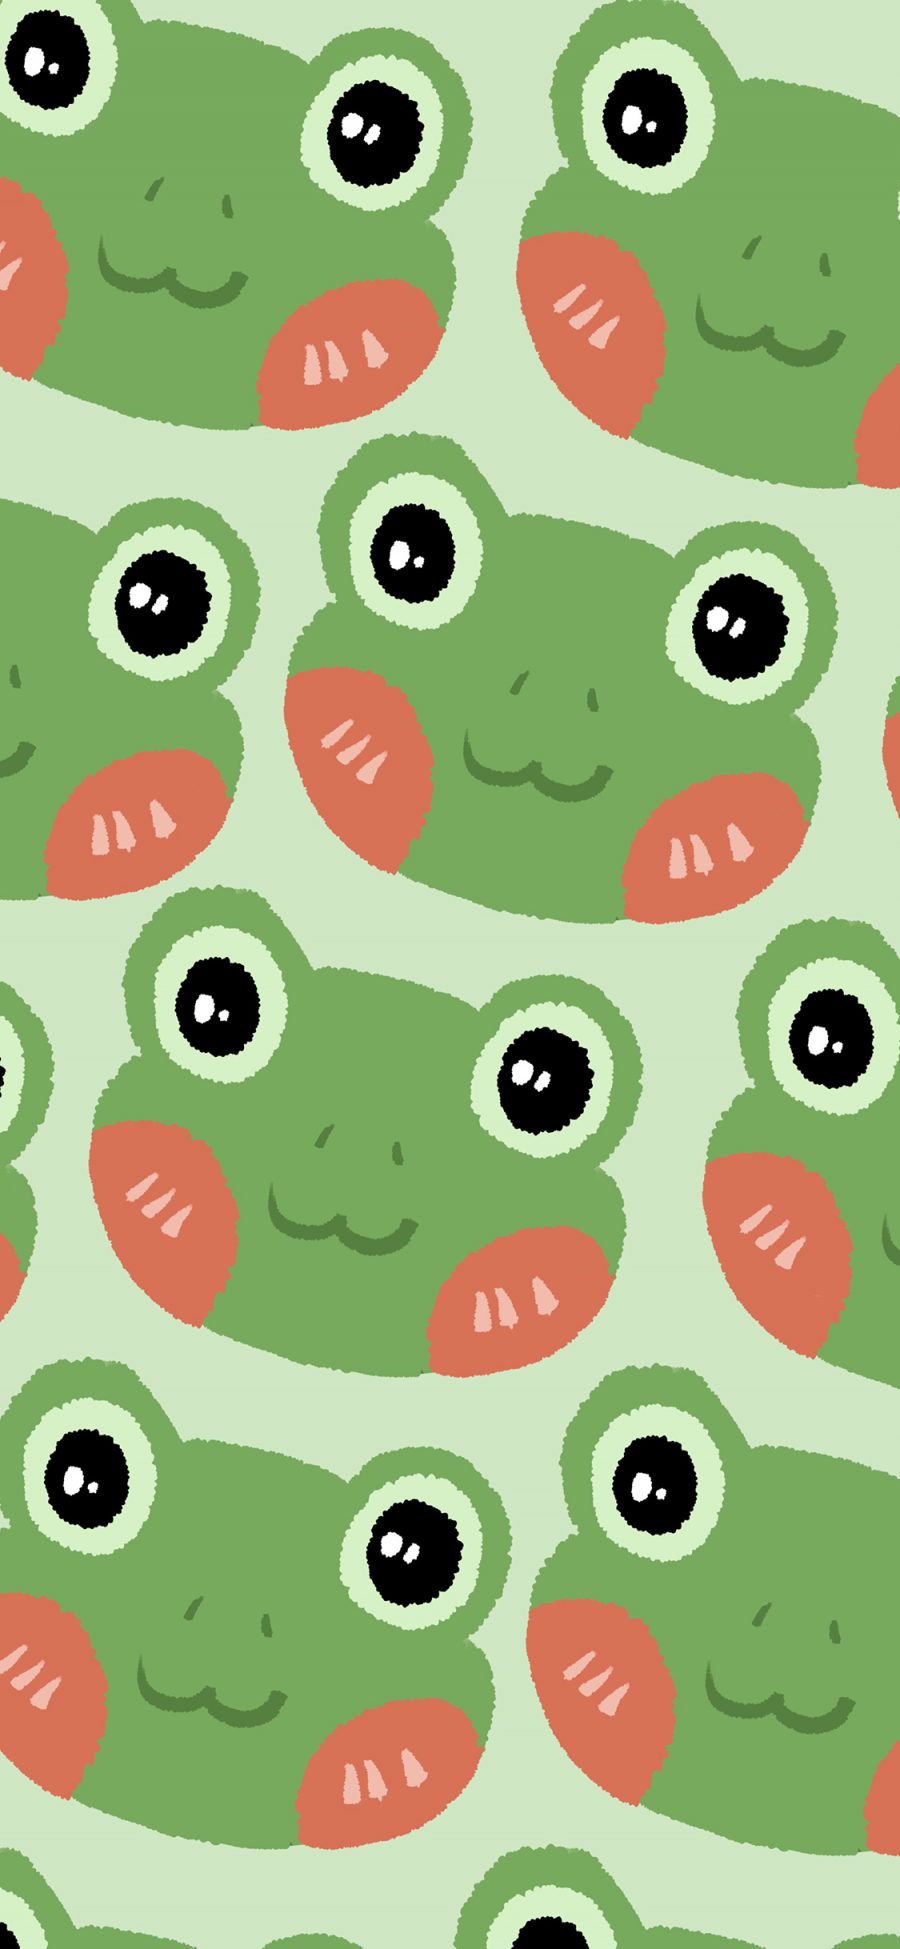 [2436×1125]青蛙 绿色 平铺 腮红 卡通 苹果手机动漫壁纸图片